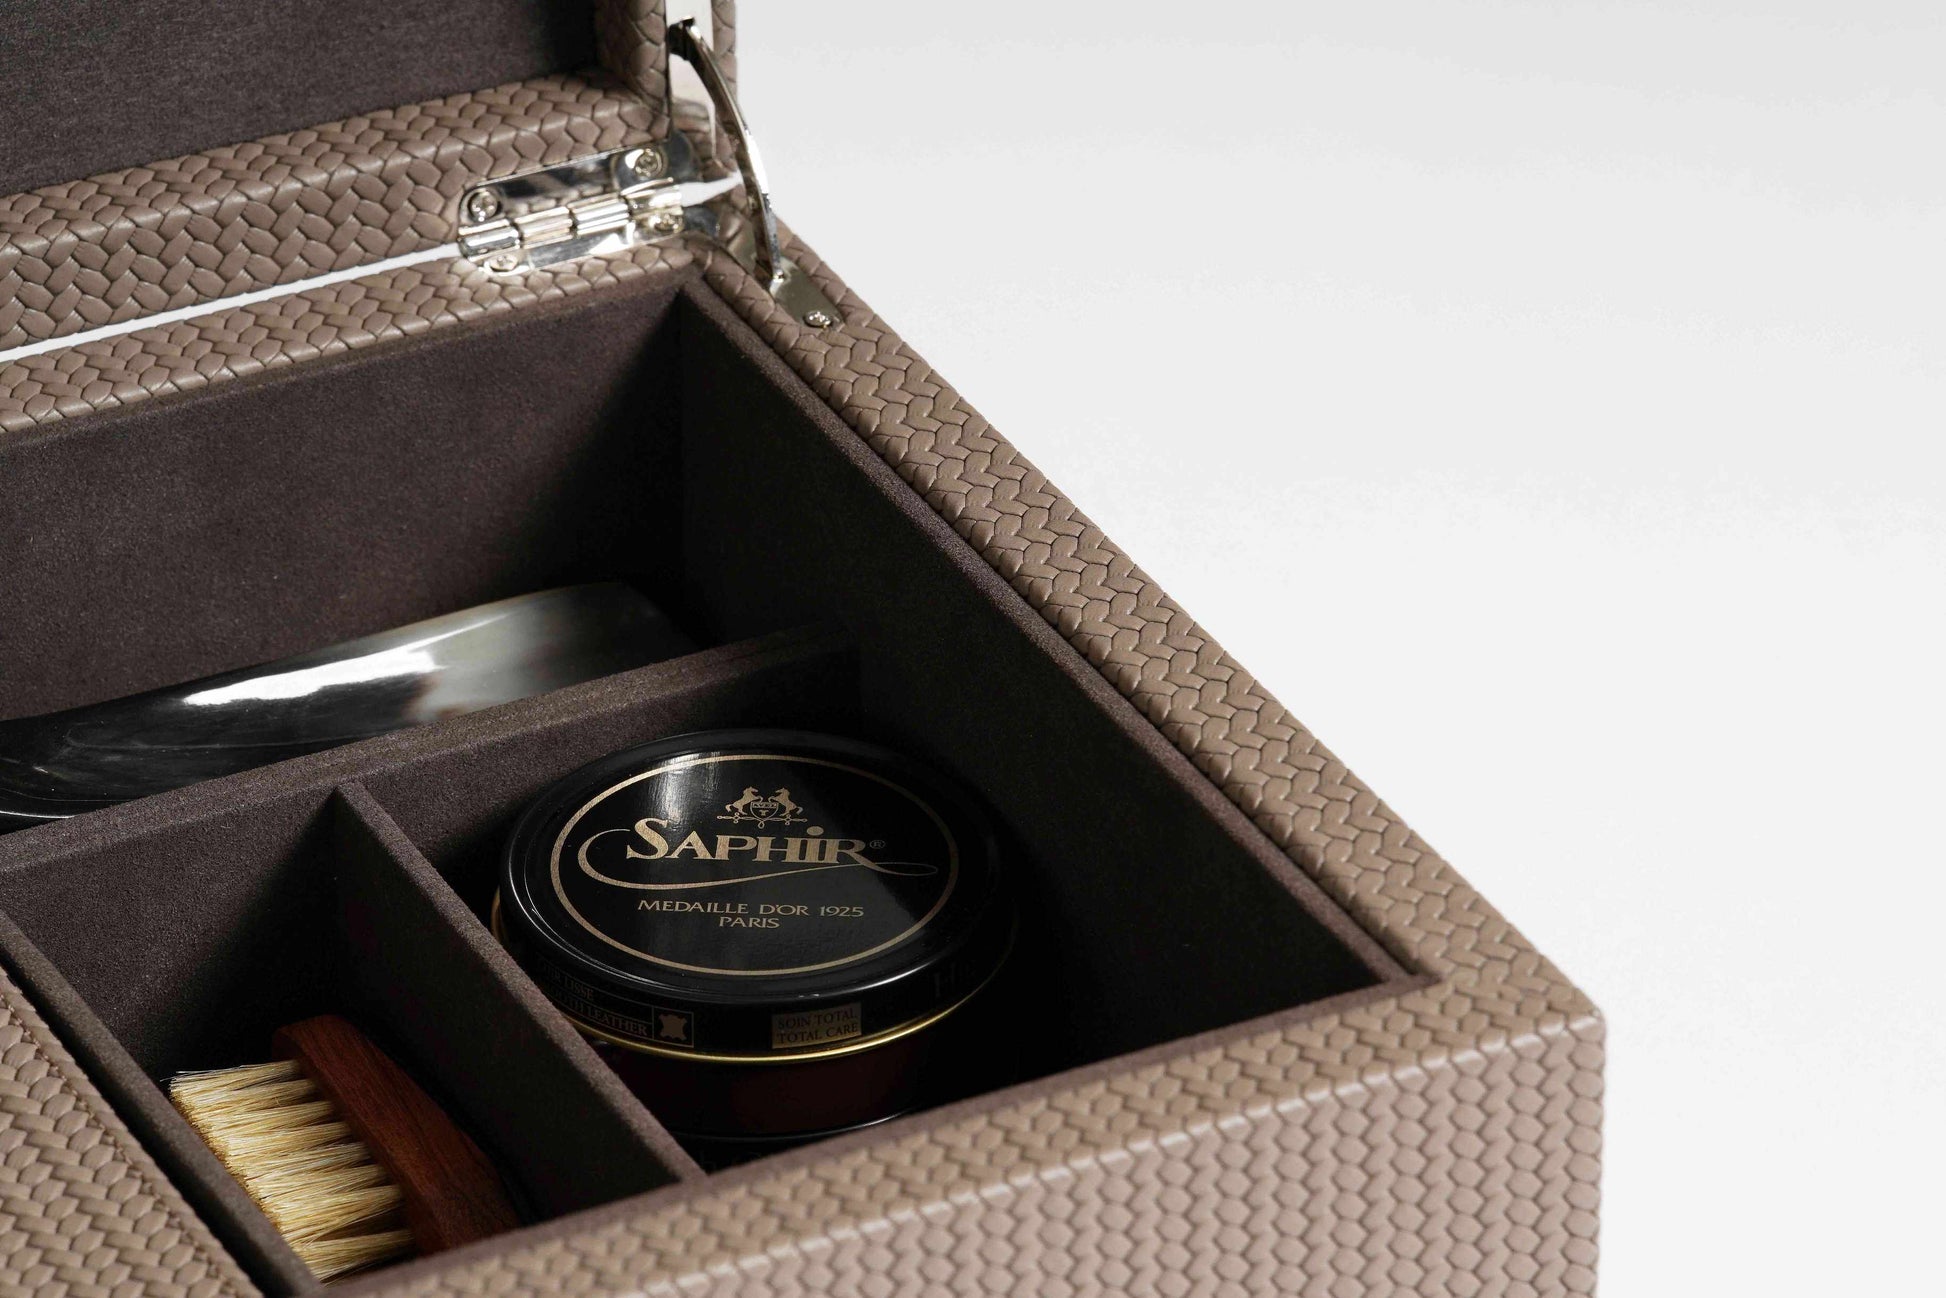 Pinetti Leather Shoe Shining Kit Box | Stylish Shoe Care, Elegant Organizer & Gift Items | 2Jour Concierge, #1 luxury high-end gift & lifestyle shop